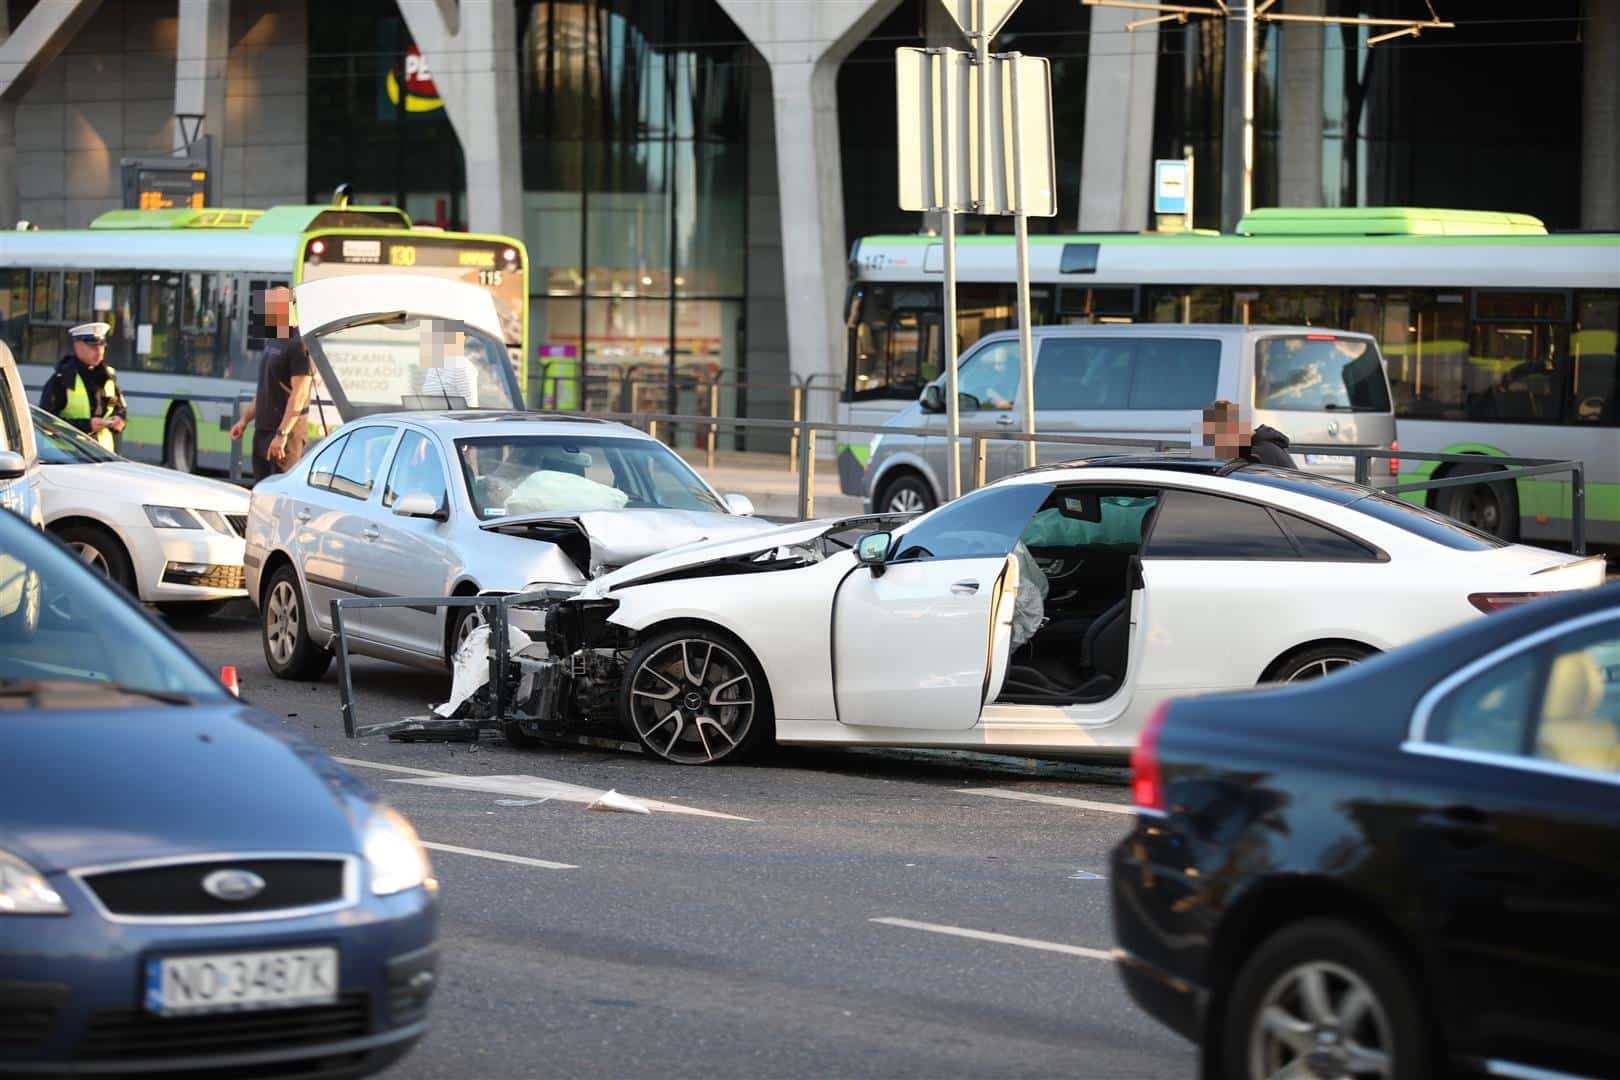 Driftował pod Galerią Warmińską? 22-letni kierowca Mercedesa stracił "prawko" wypadek Olsztyn, Wiadomości, Wideo